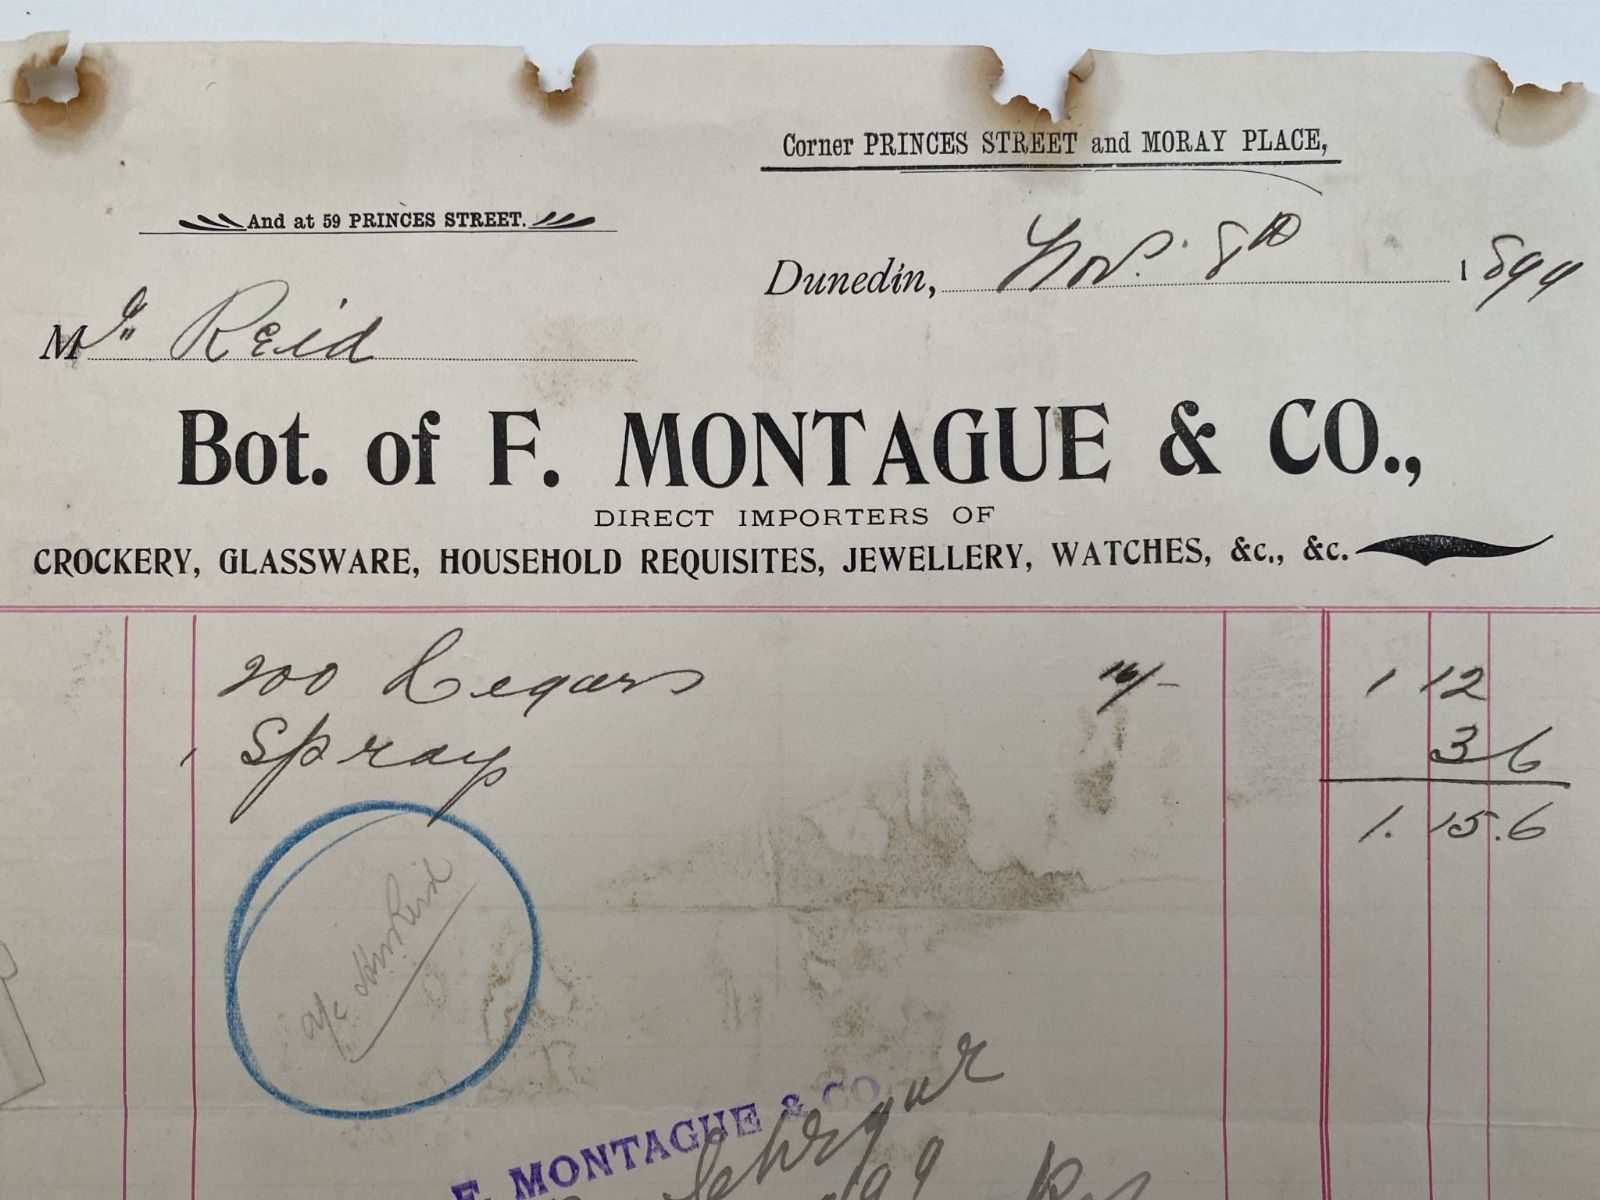 ANTIQUE INVOICE / RECEIPT: F. Montague & Co, Dunedin - Importers 1899